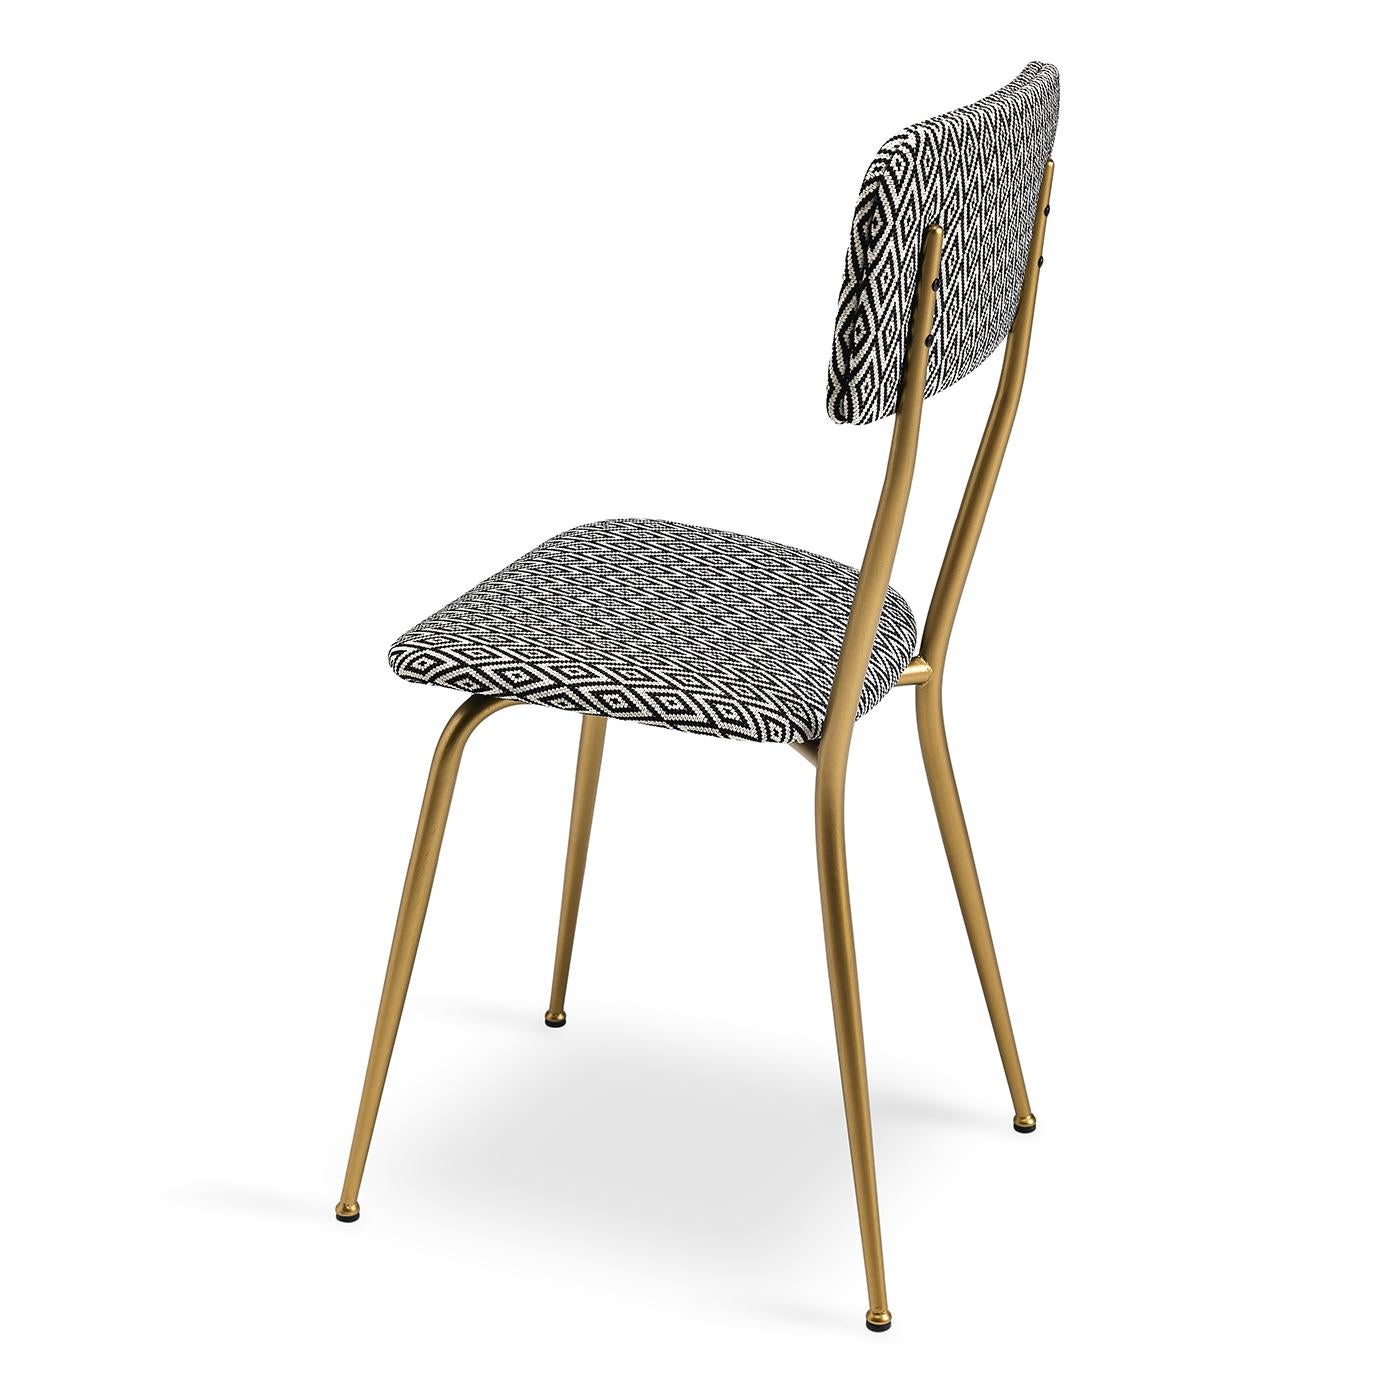 Dieser raffinierte Stuhl hat einen eleganten Metallrahmen mit gebürsteter Messingoberfläche. In starkem Kontrast zu seiner schlichten Ästhetik steht die geometrische Polsterung, die den gepolsterten Sitz und die Rückenlehne bedeckt und für einen